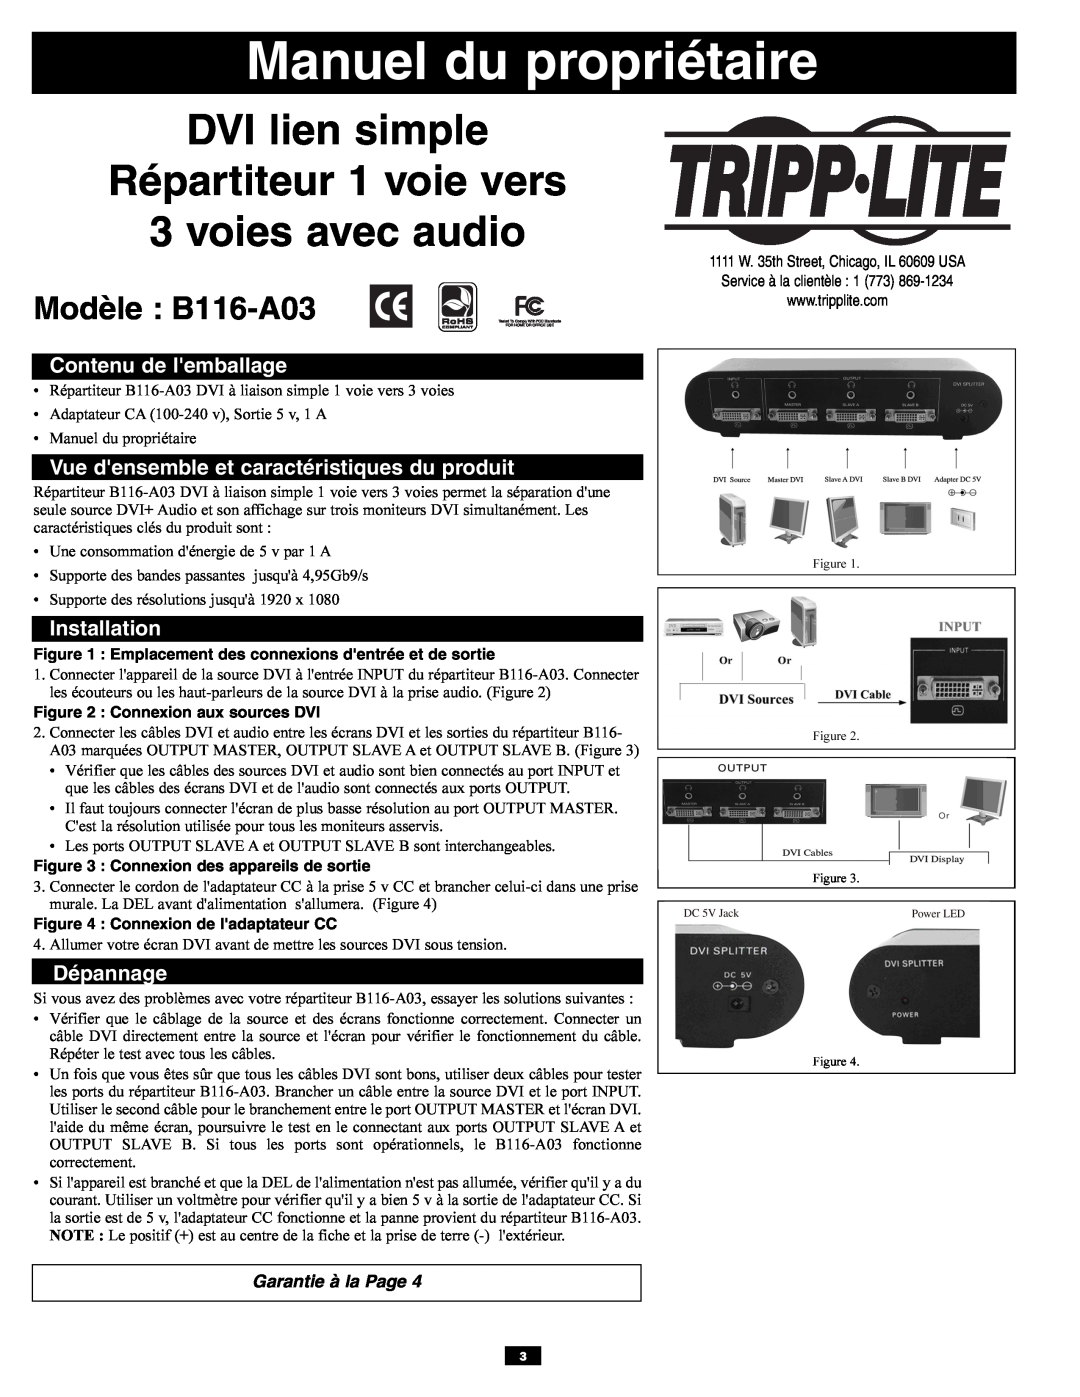 Tripp Lite Manuel du propriétaire, DVI lien simple Répartiteur 1 voie vers 3 voies avec audio, Modèle B116-A03 